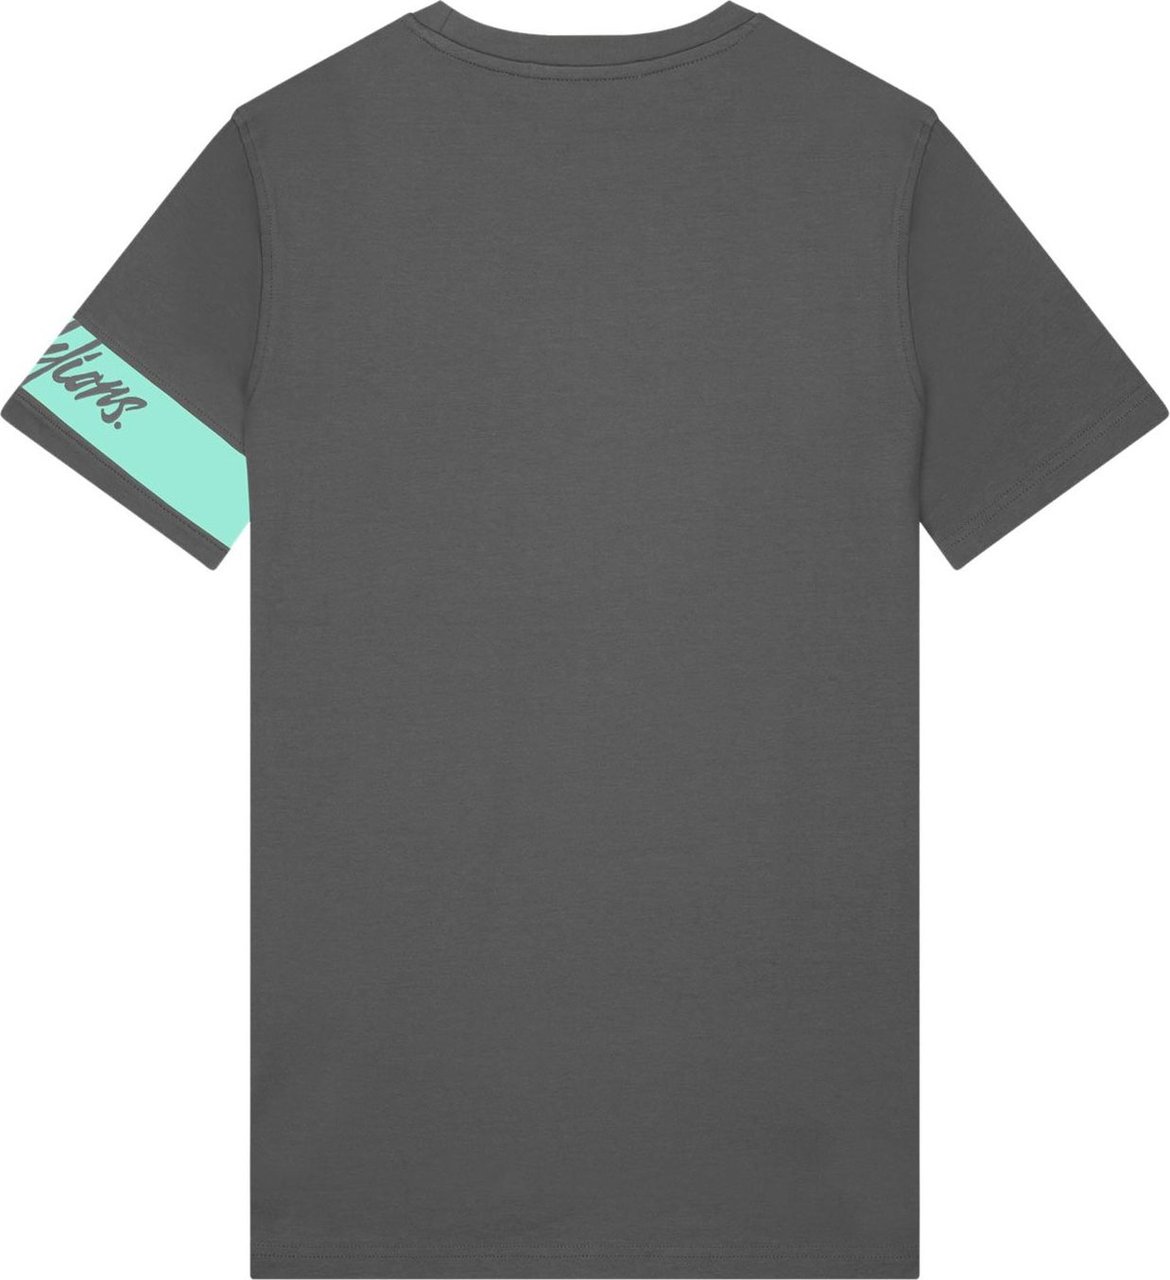 Malelions Captain T-Shirt - Antra/Mint Grijs